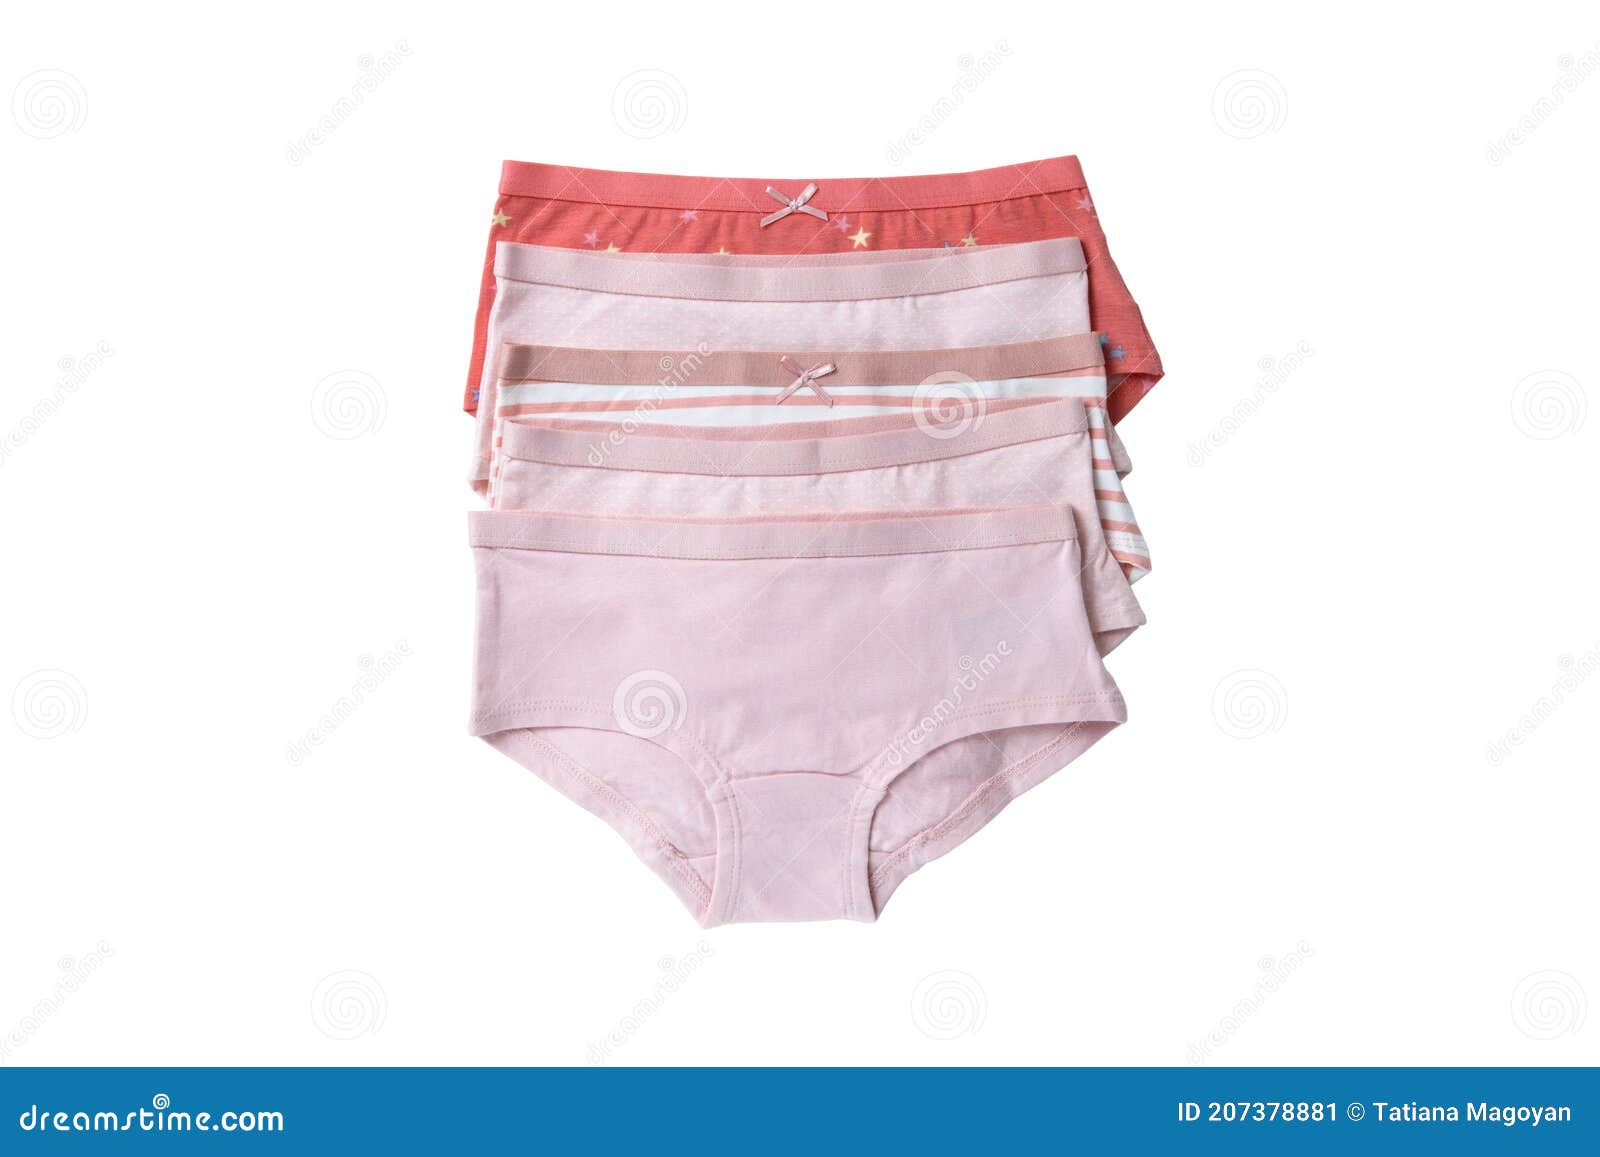 Child White Panties Red Cap Splashing Foto stock 1175283397